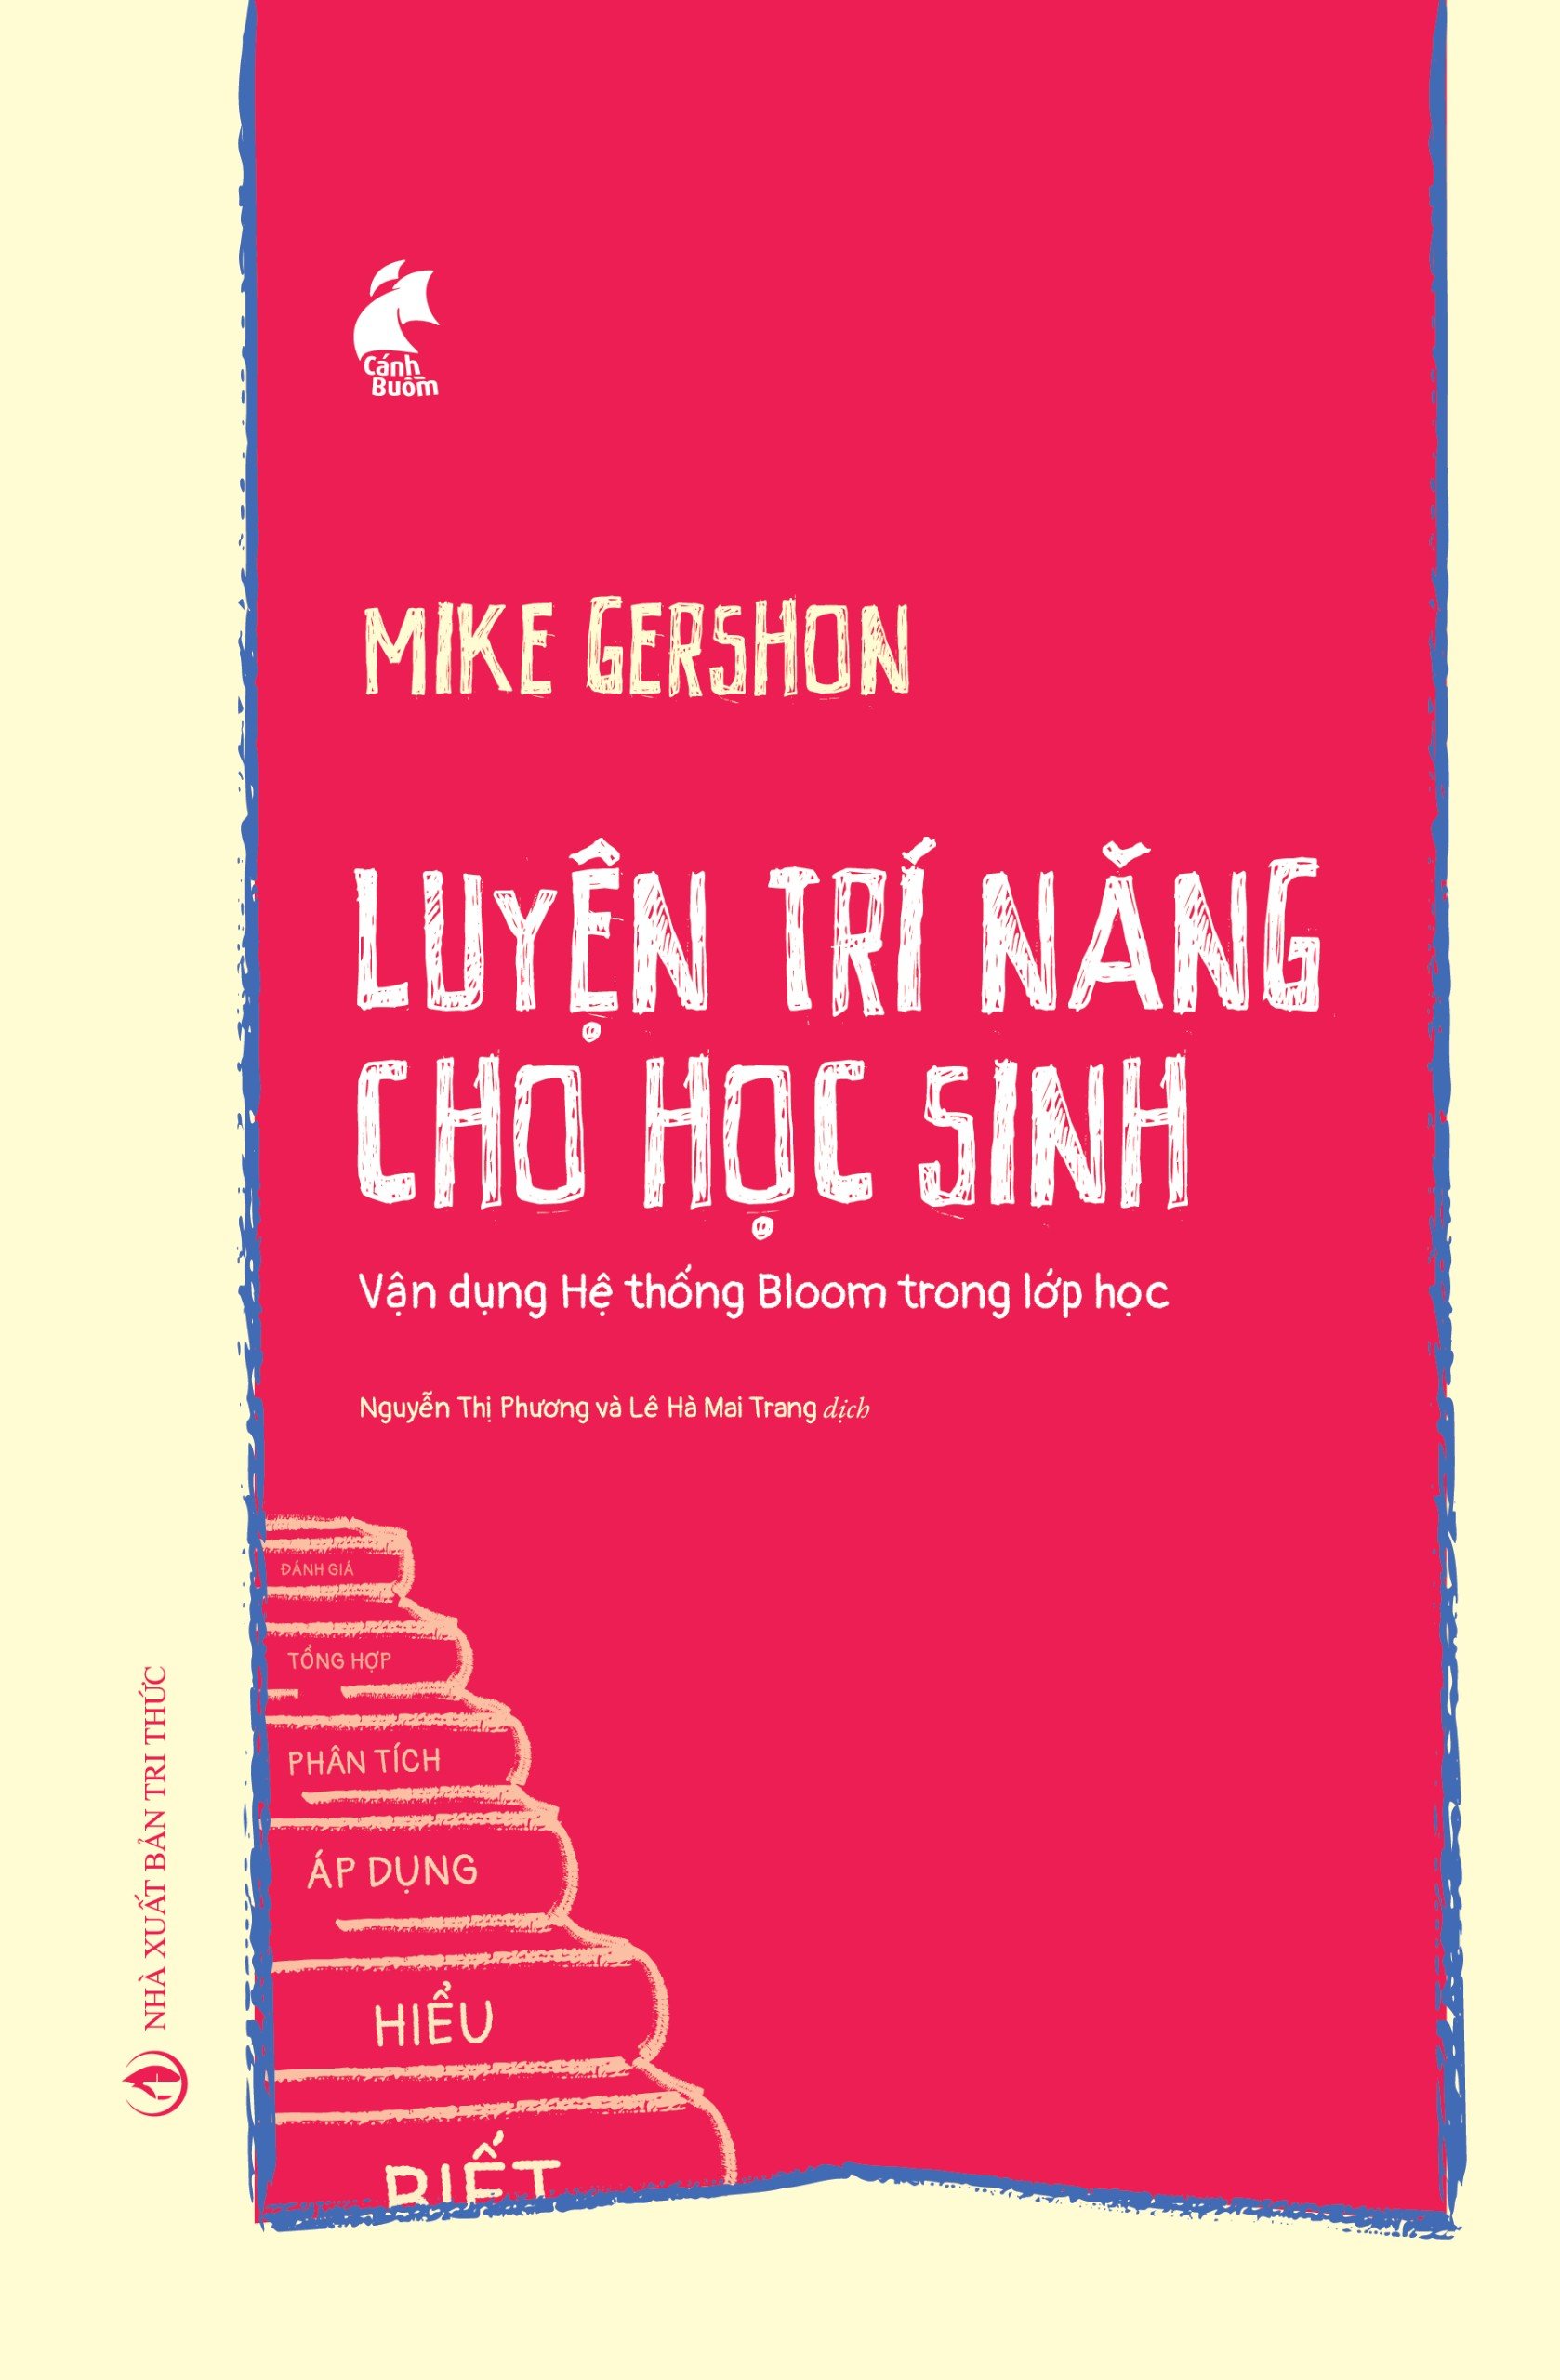 LUYỆN TRÍ NĂNG CHO HỌC SINH - Mike Gershon - Nguyễn Thị Phương, Lê Hà Mai Trang dịch - (bìa mềm)